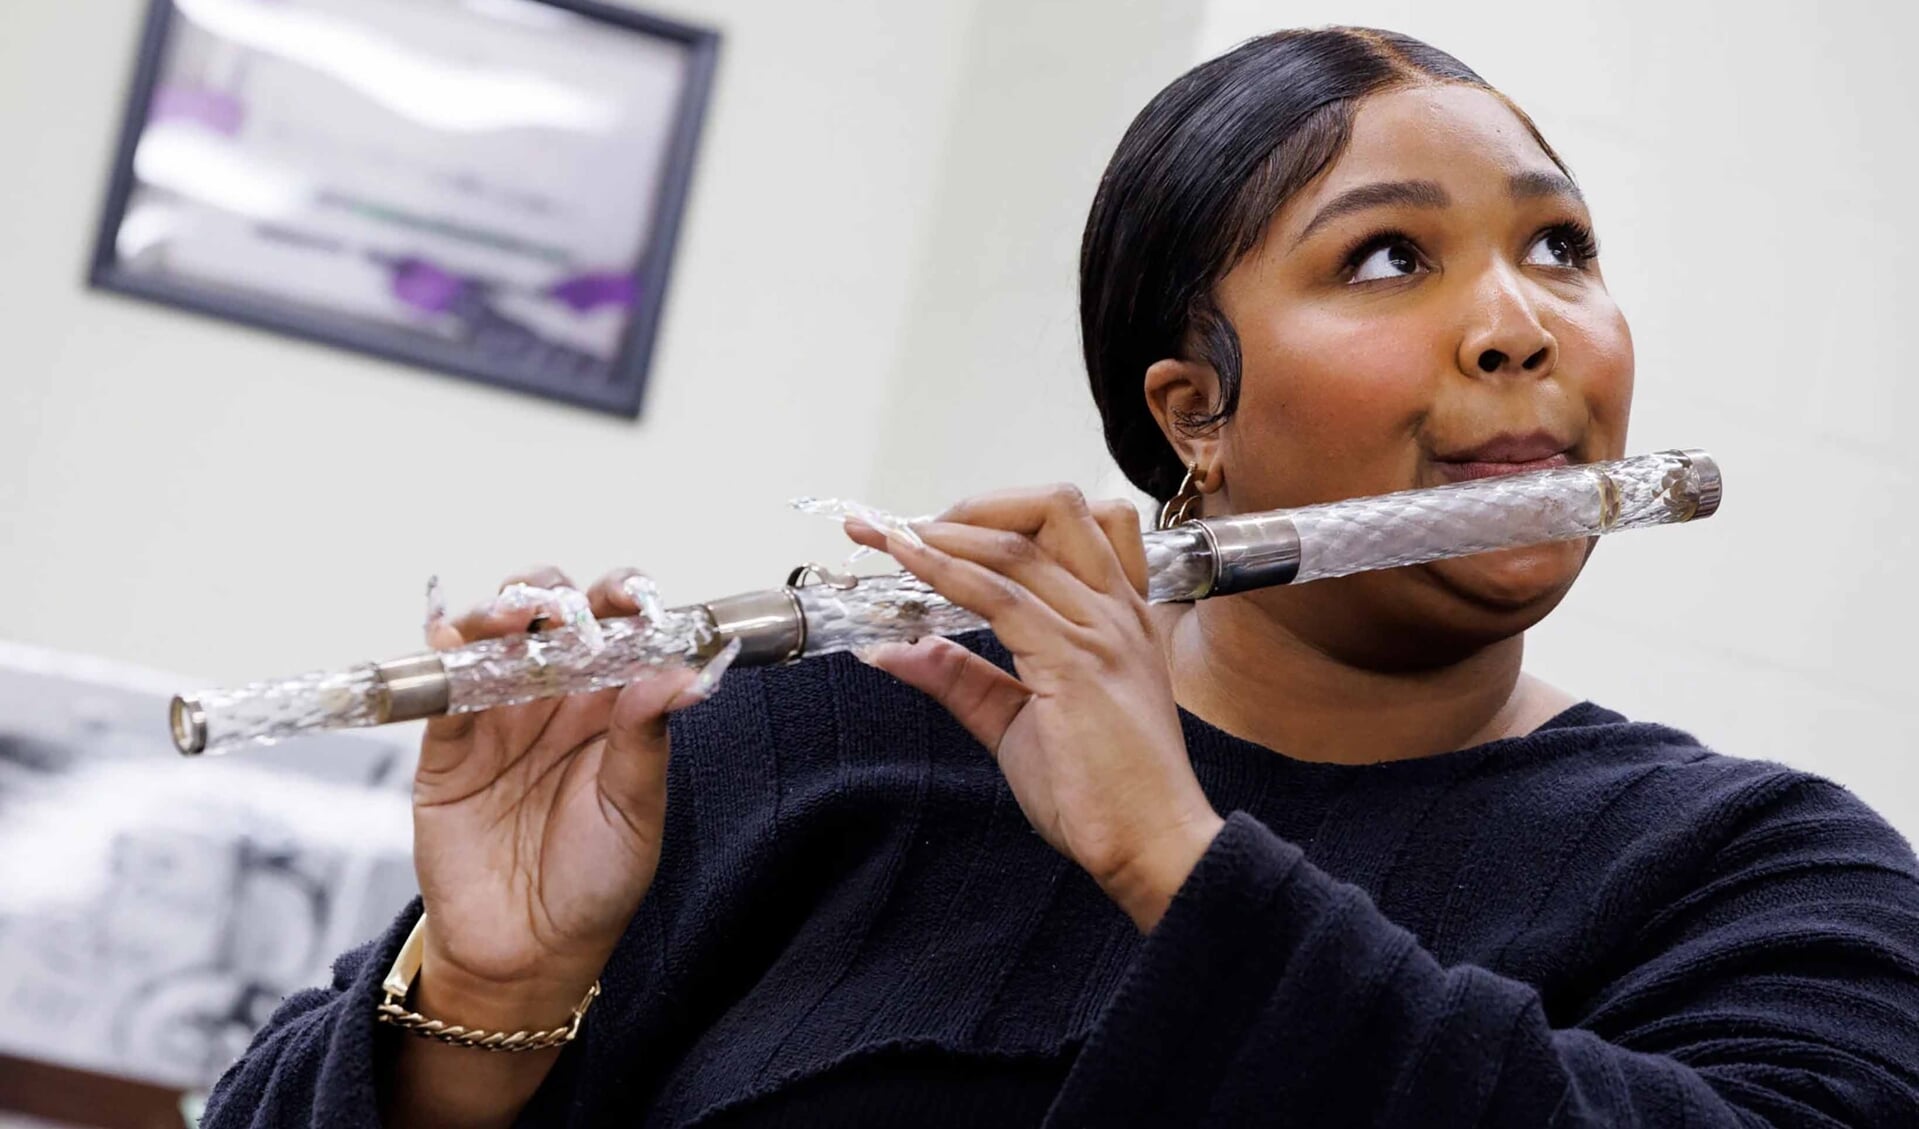 Tijdens haar optreden in Washington D.C. speelde Lizzo een aantal noten voor het echie, niet makkelijk op zo’n oude fluit. 